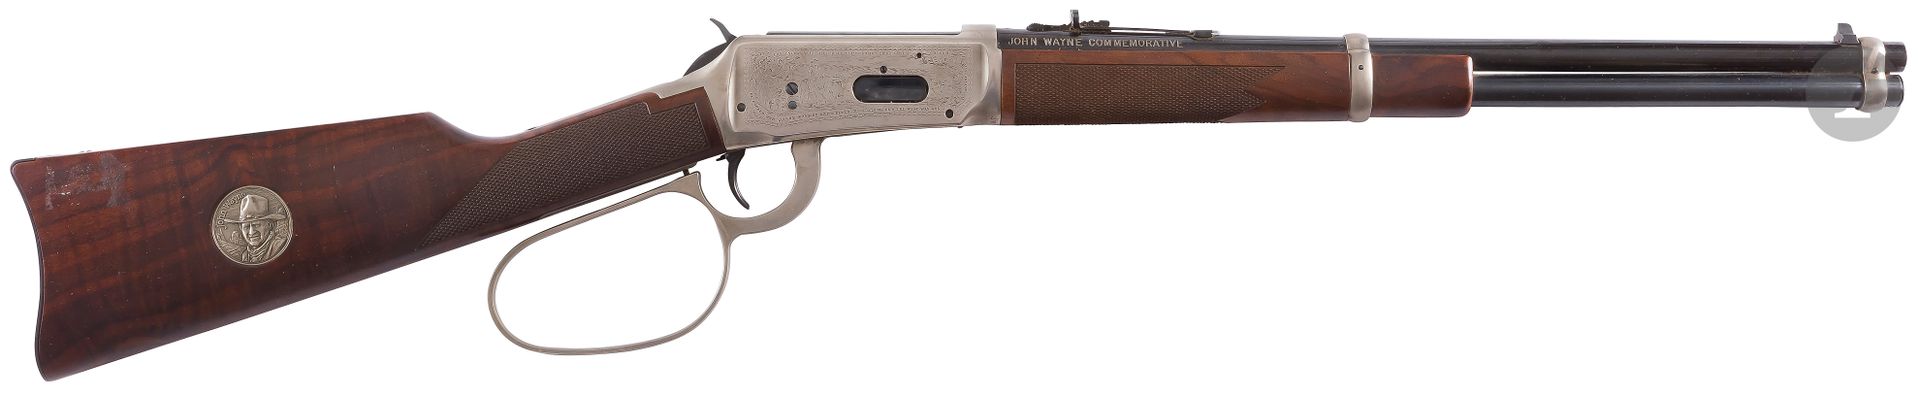 Null 温彻斯特94 "约翰-韦恩纪念版 "步枪，32-40口径，
银色刻纹装饰
。
签名的后座。大环形杠杆。胡桃木枪托，有银质奖章。
桶长：45厘米-全长：&hellip;